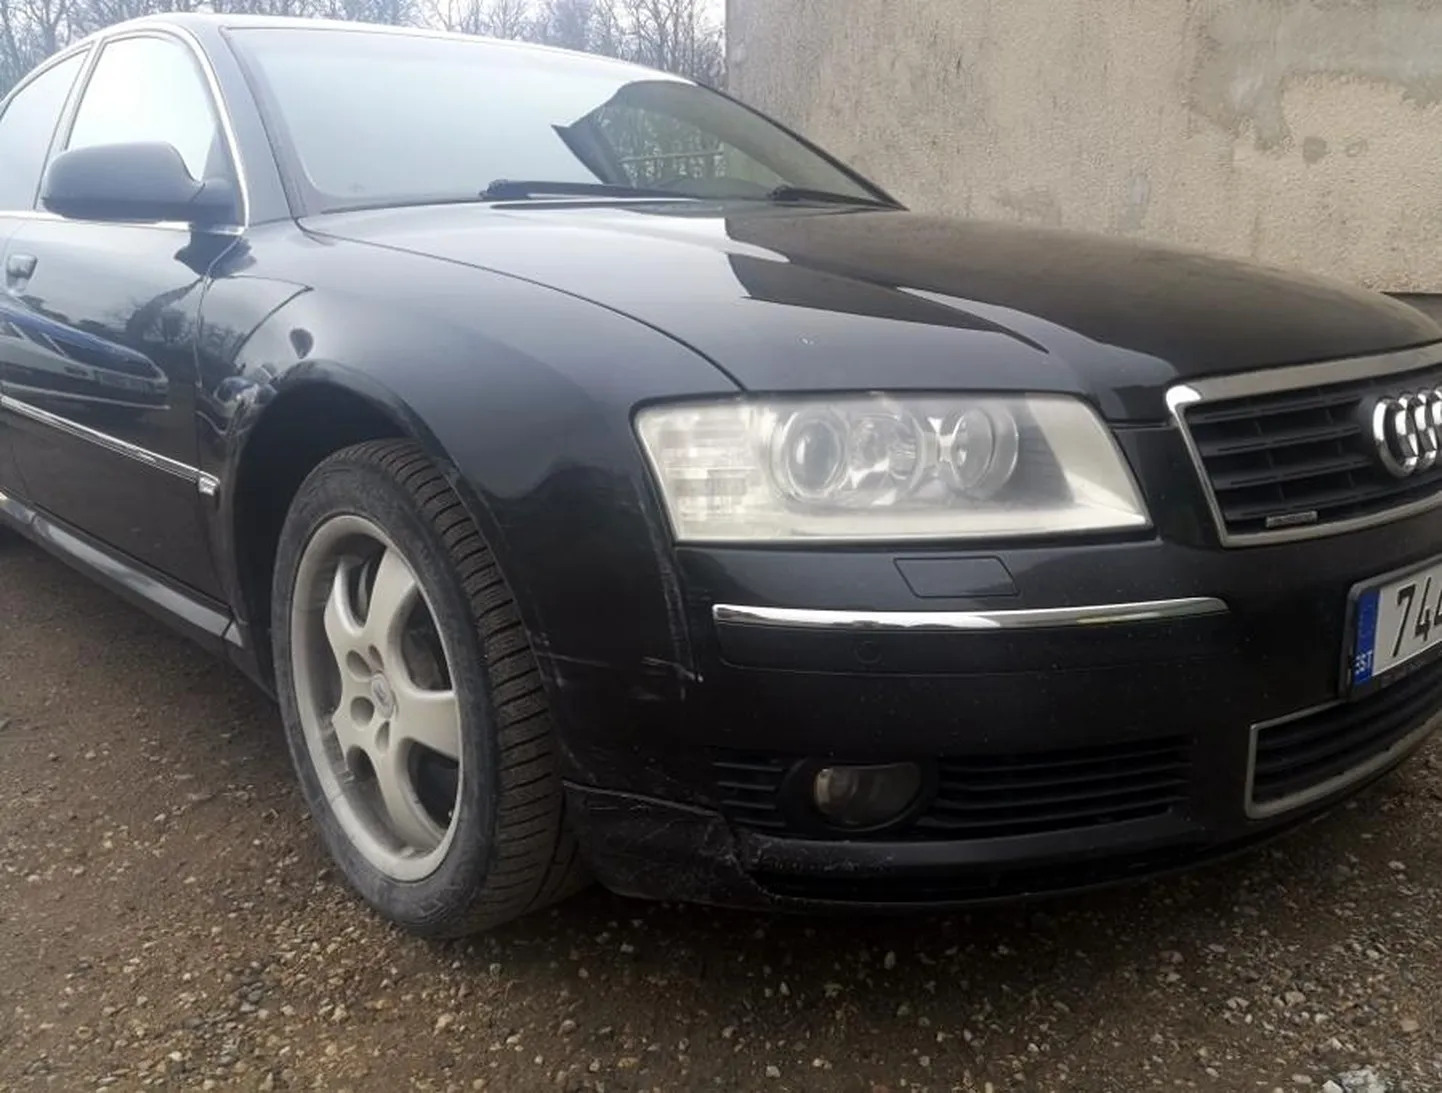 Полиция эвакуировала автомобиль Audi, который 23-летний мужчина без прав оставил у магазина в деревне Кеэни.